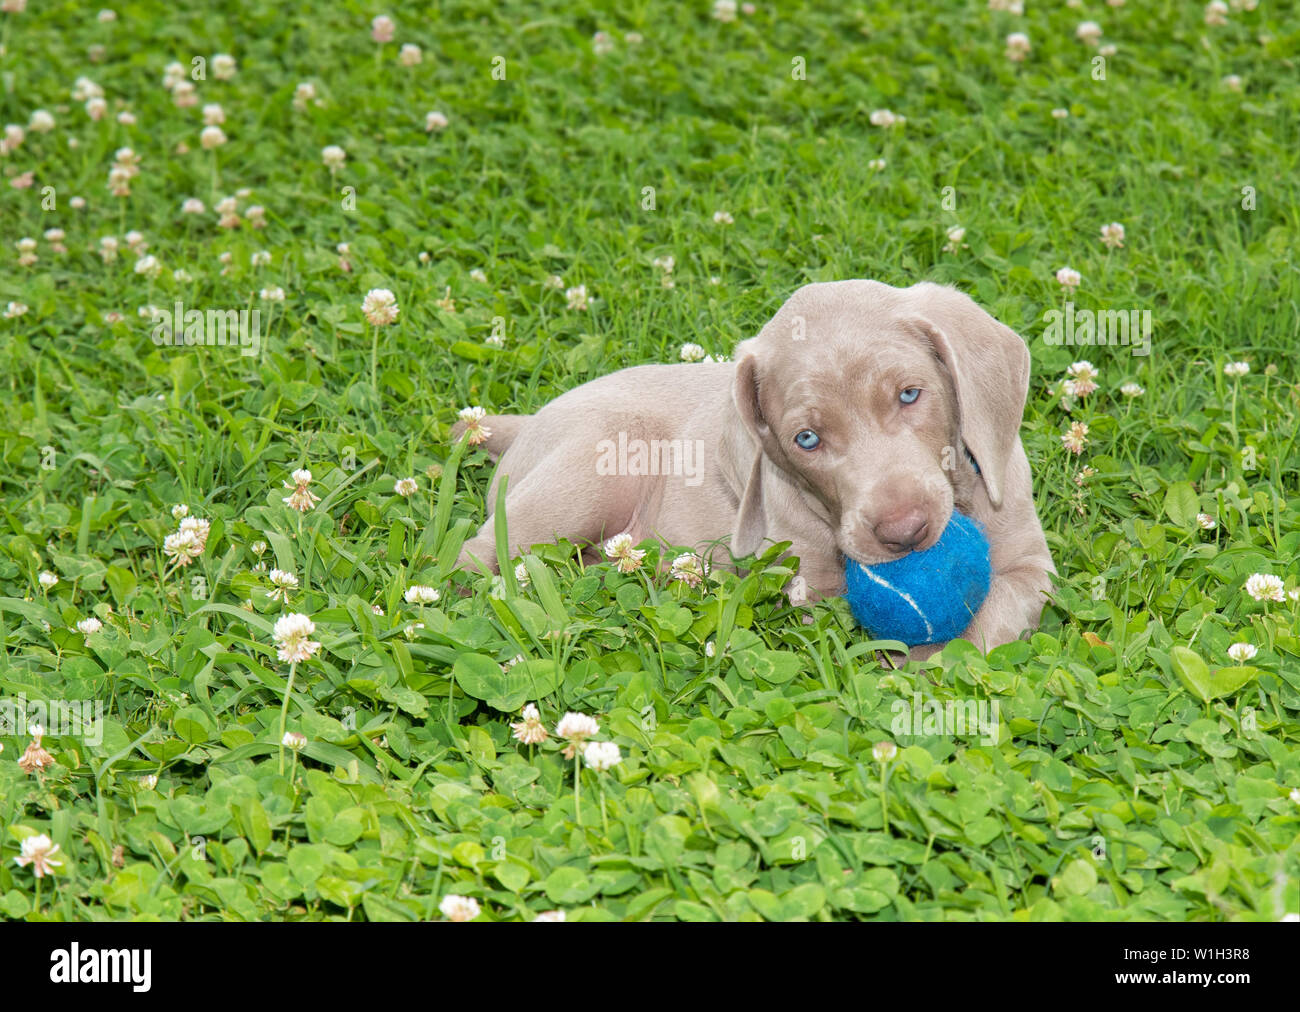 Braque de Weimar chiot tenant une boule bleue dans sa bouche tout en étant allongé dans l'herbe Banque D'Images